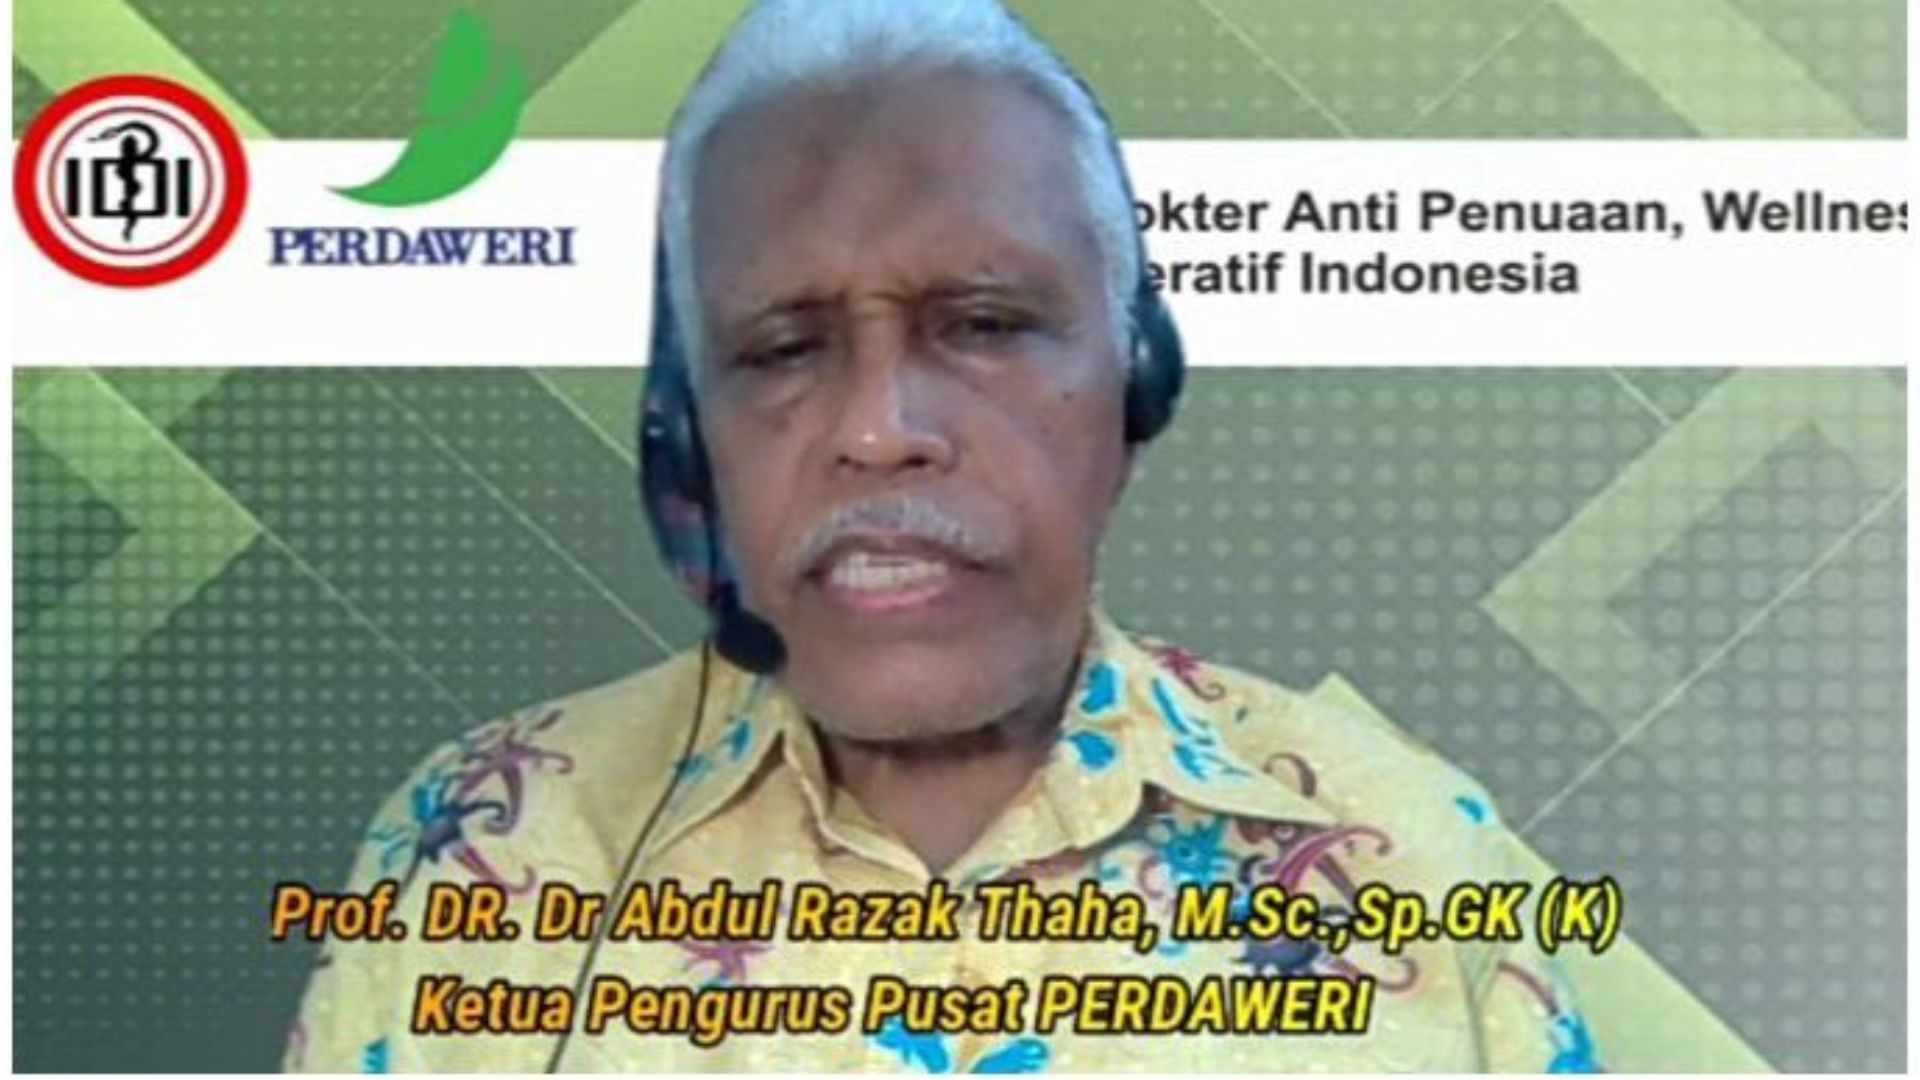 Ketua PP Perdaweri Ucapkan Selamat atas Peluncuran Produk Wisata Kesehatan Bali oleh Digital Hospital